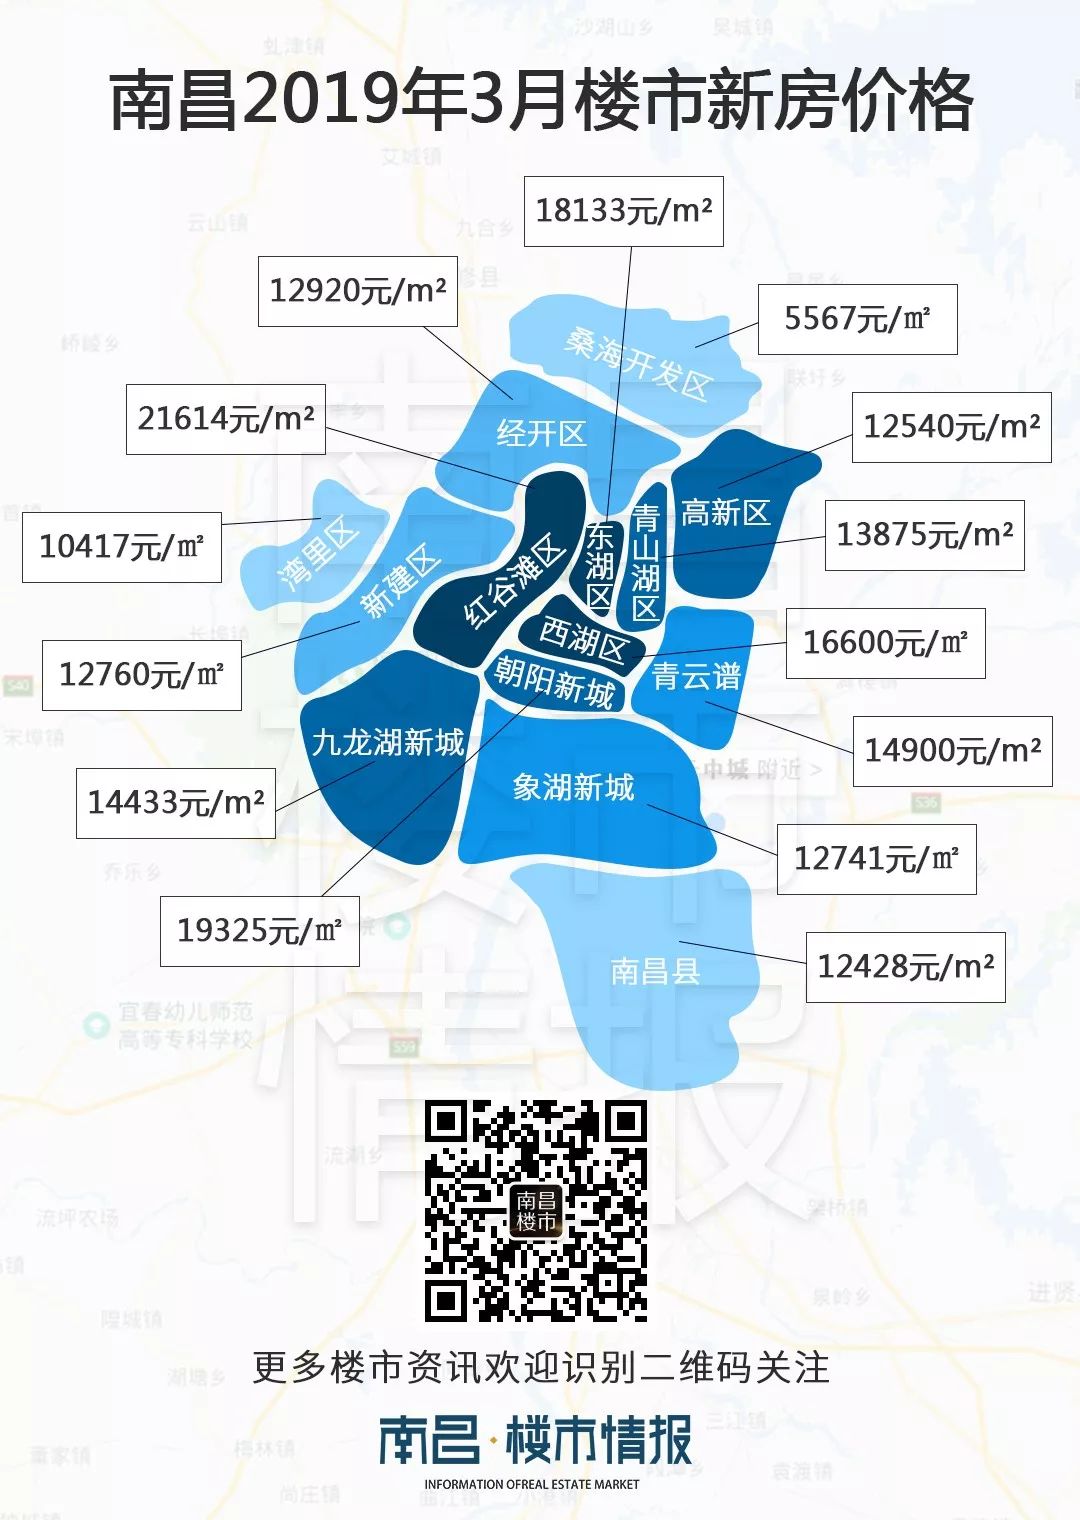 9月南昌最新最全房价整理 3个区域房价过2万-大江频道-中国江西网首页